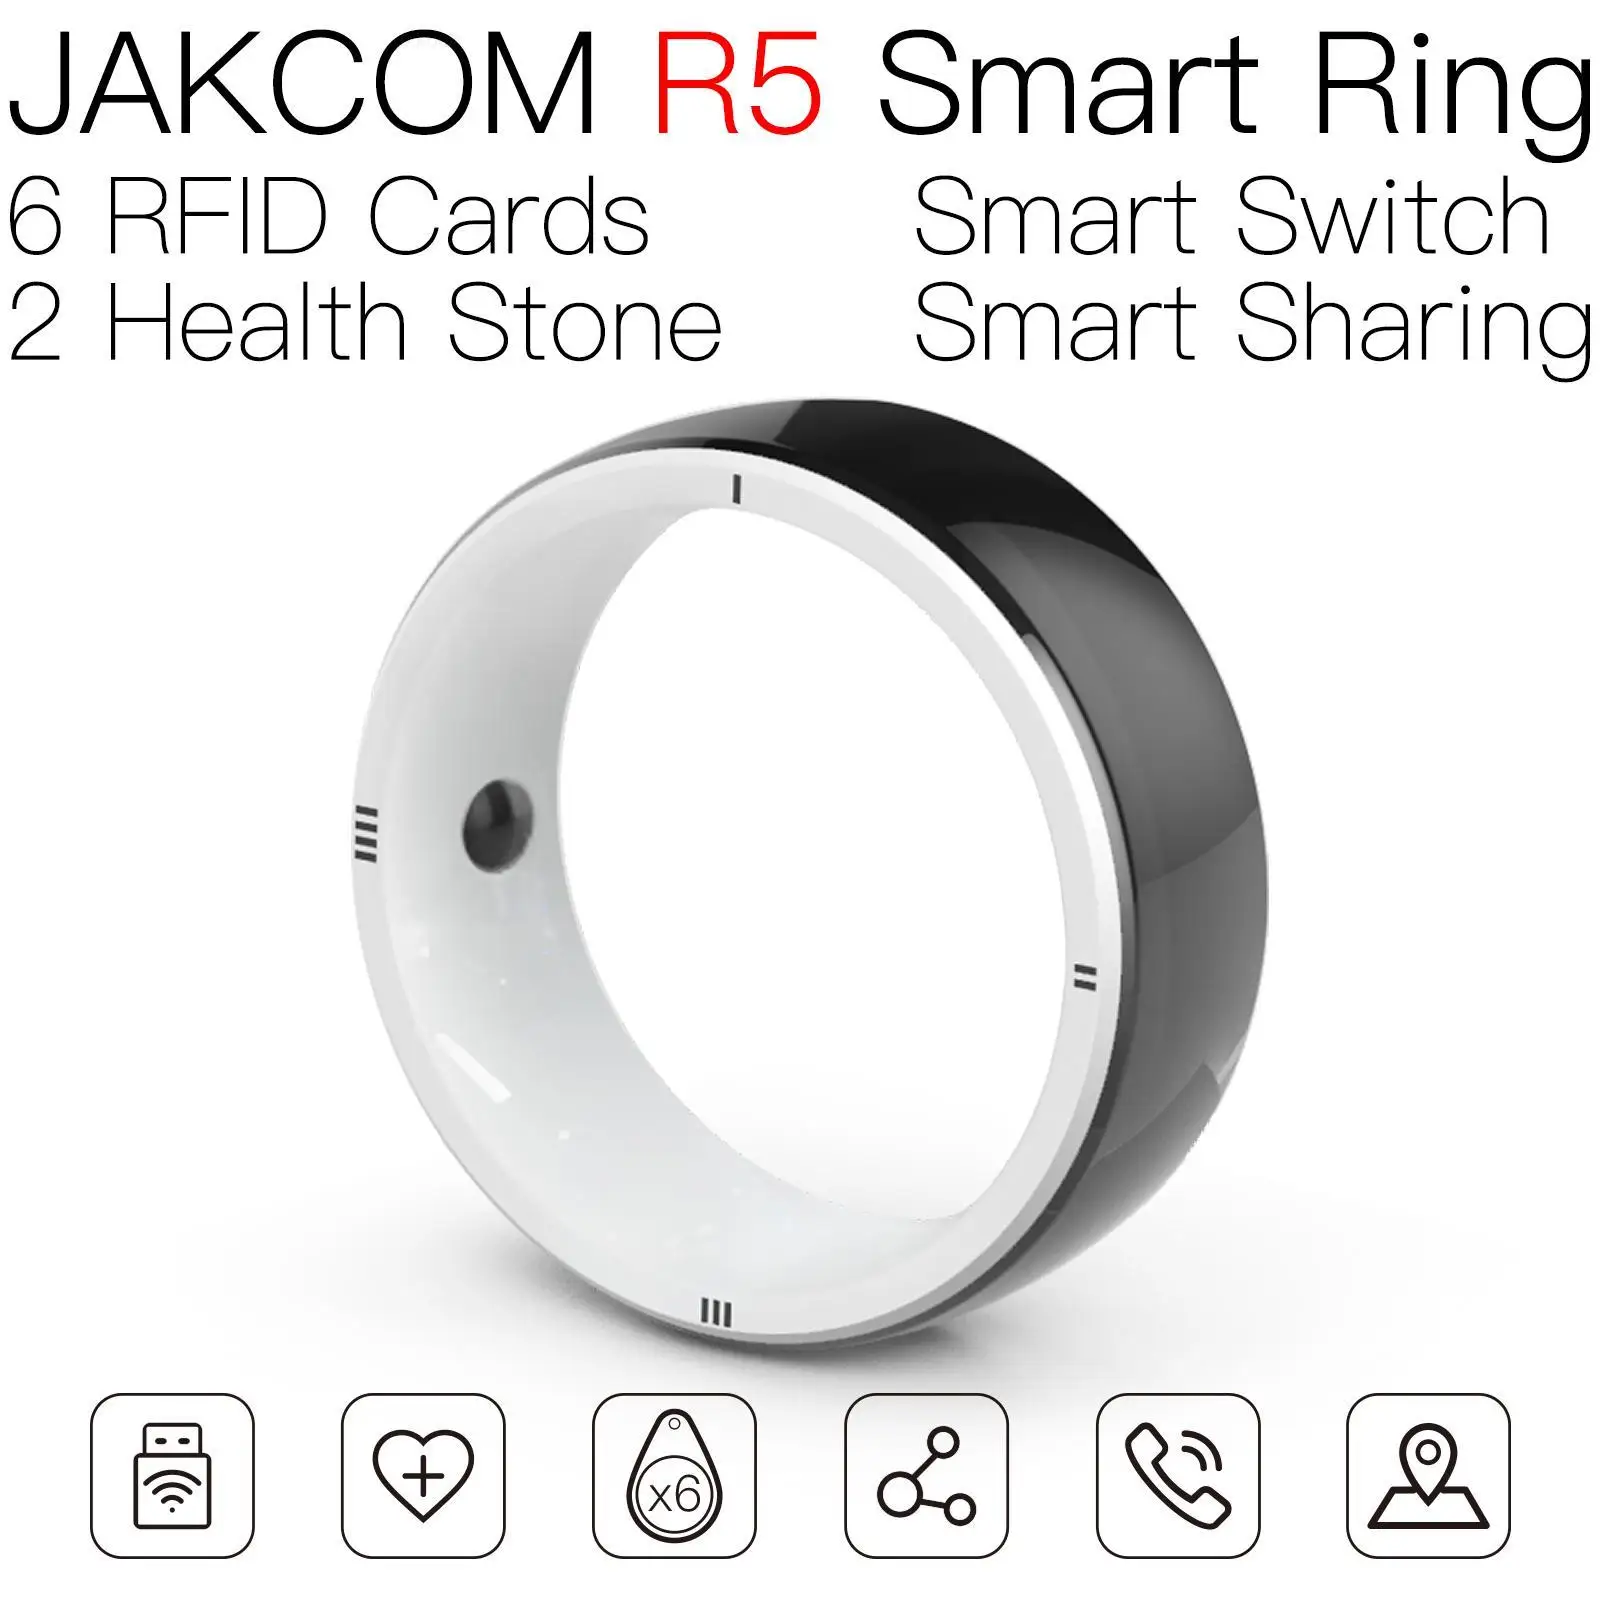 Смарт-кольцо JAKCOM R5 для мужчин и женщин, радиочастотная лампа, 12 месяцев, европейская версия, считыватель ярлыков, телефон с радиочастотной идентификацией, соответствует стандарту iso18000